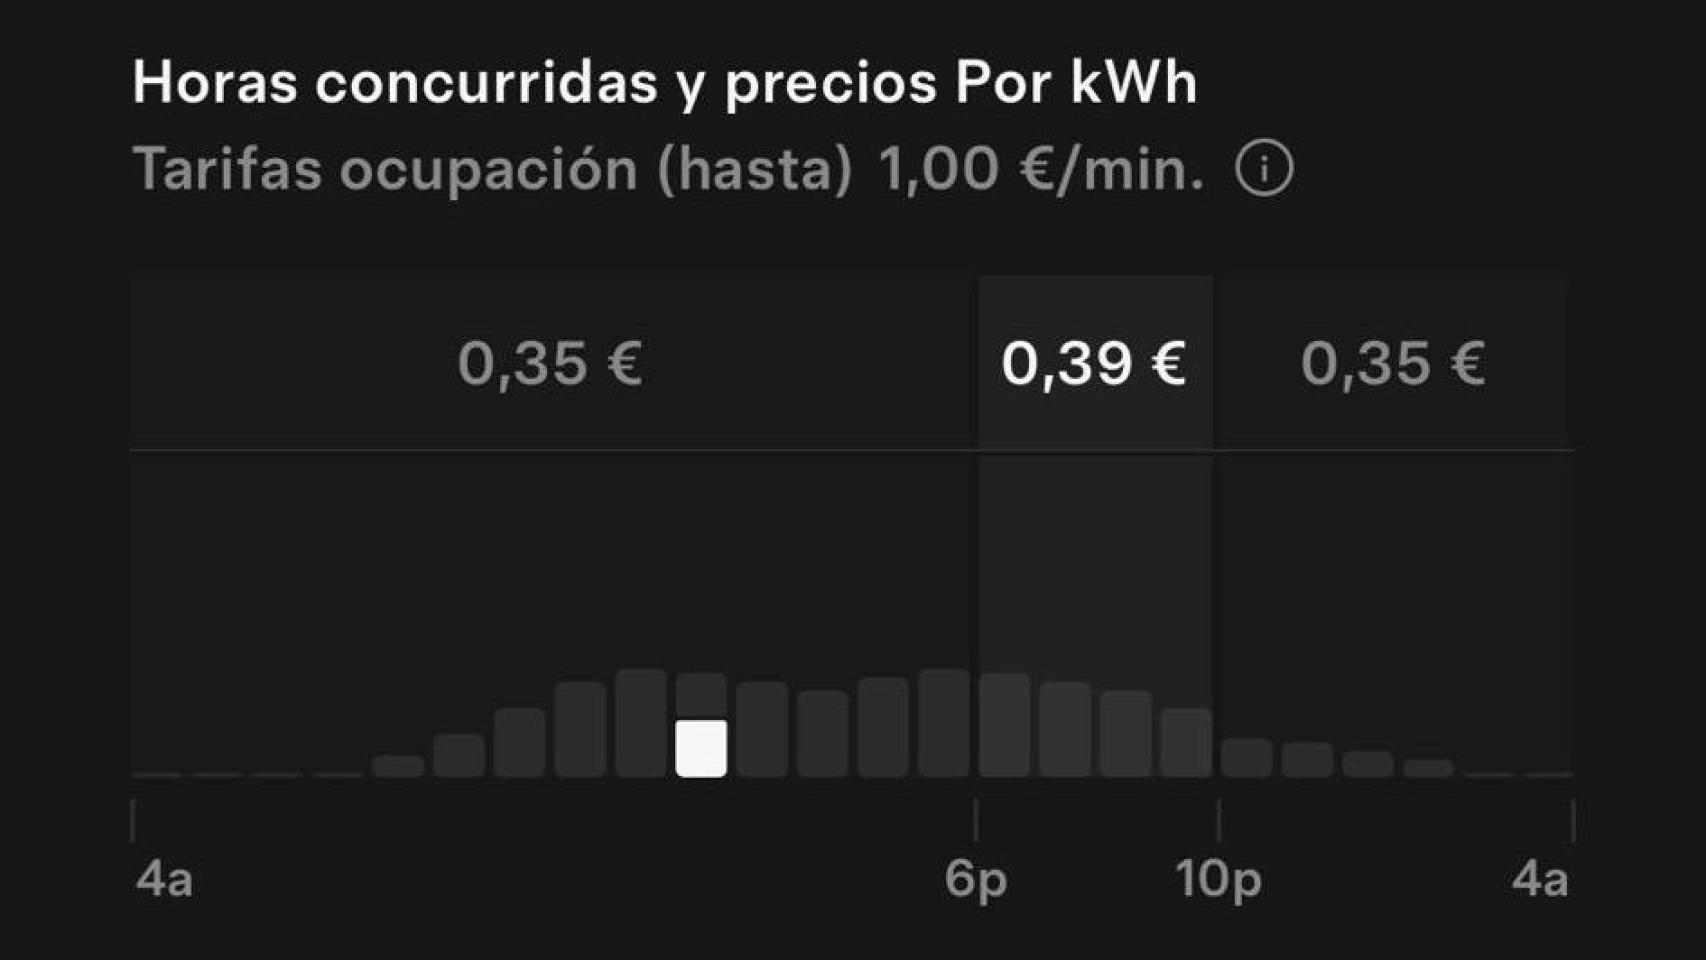 Imagen de los precios por kWh según las horas en el supercargador de Barakaldo.